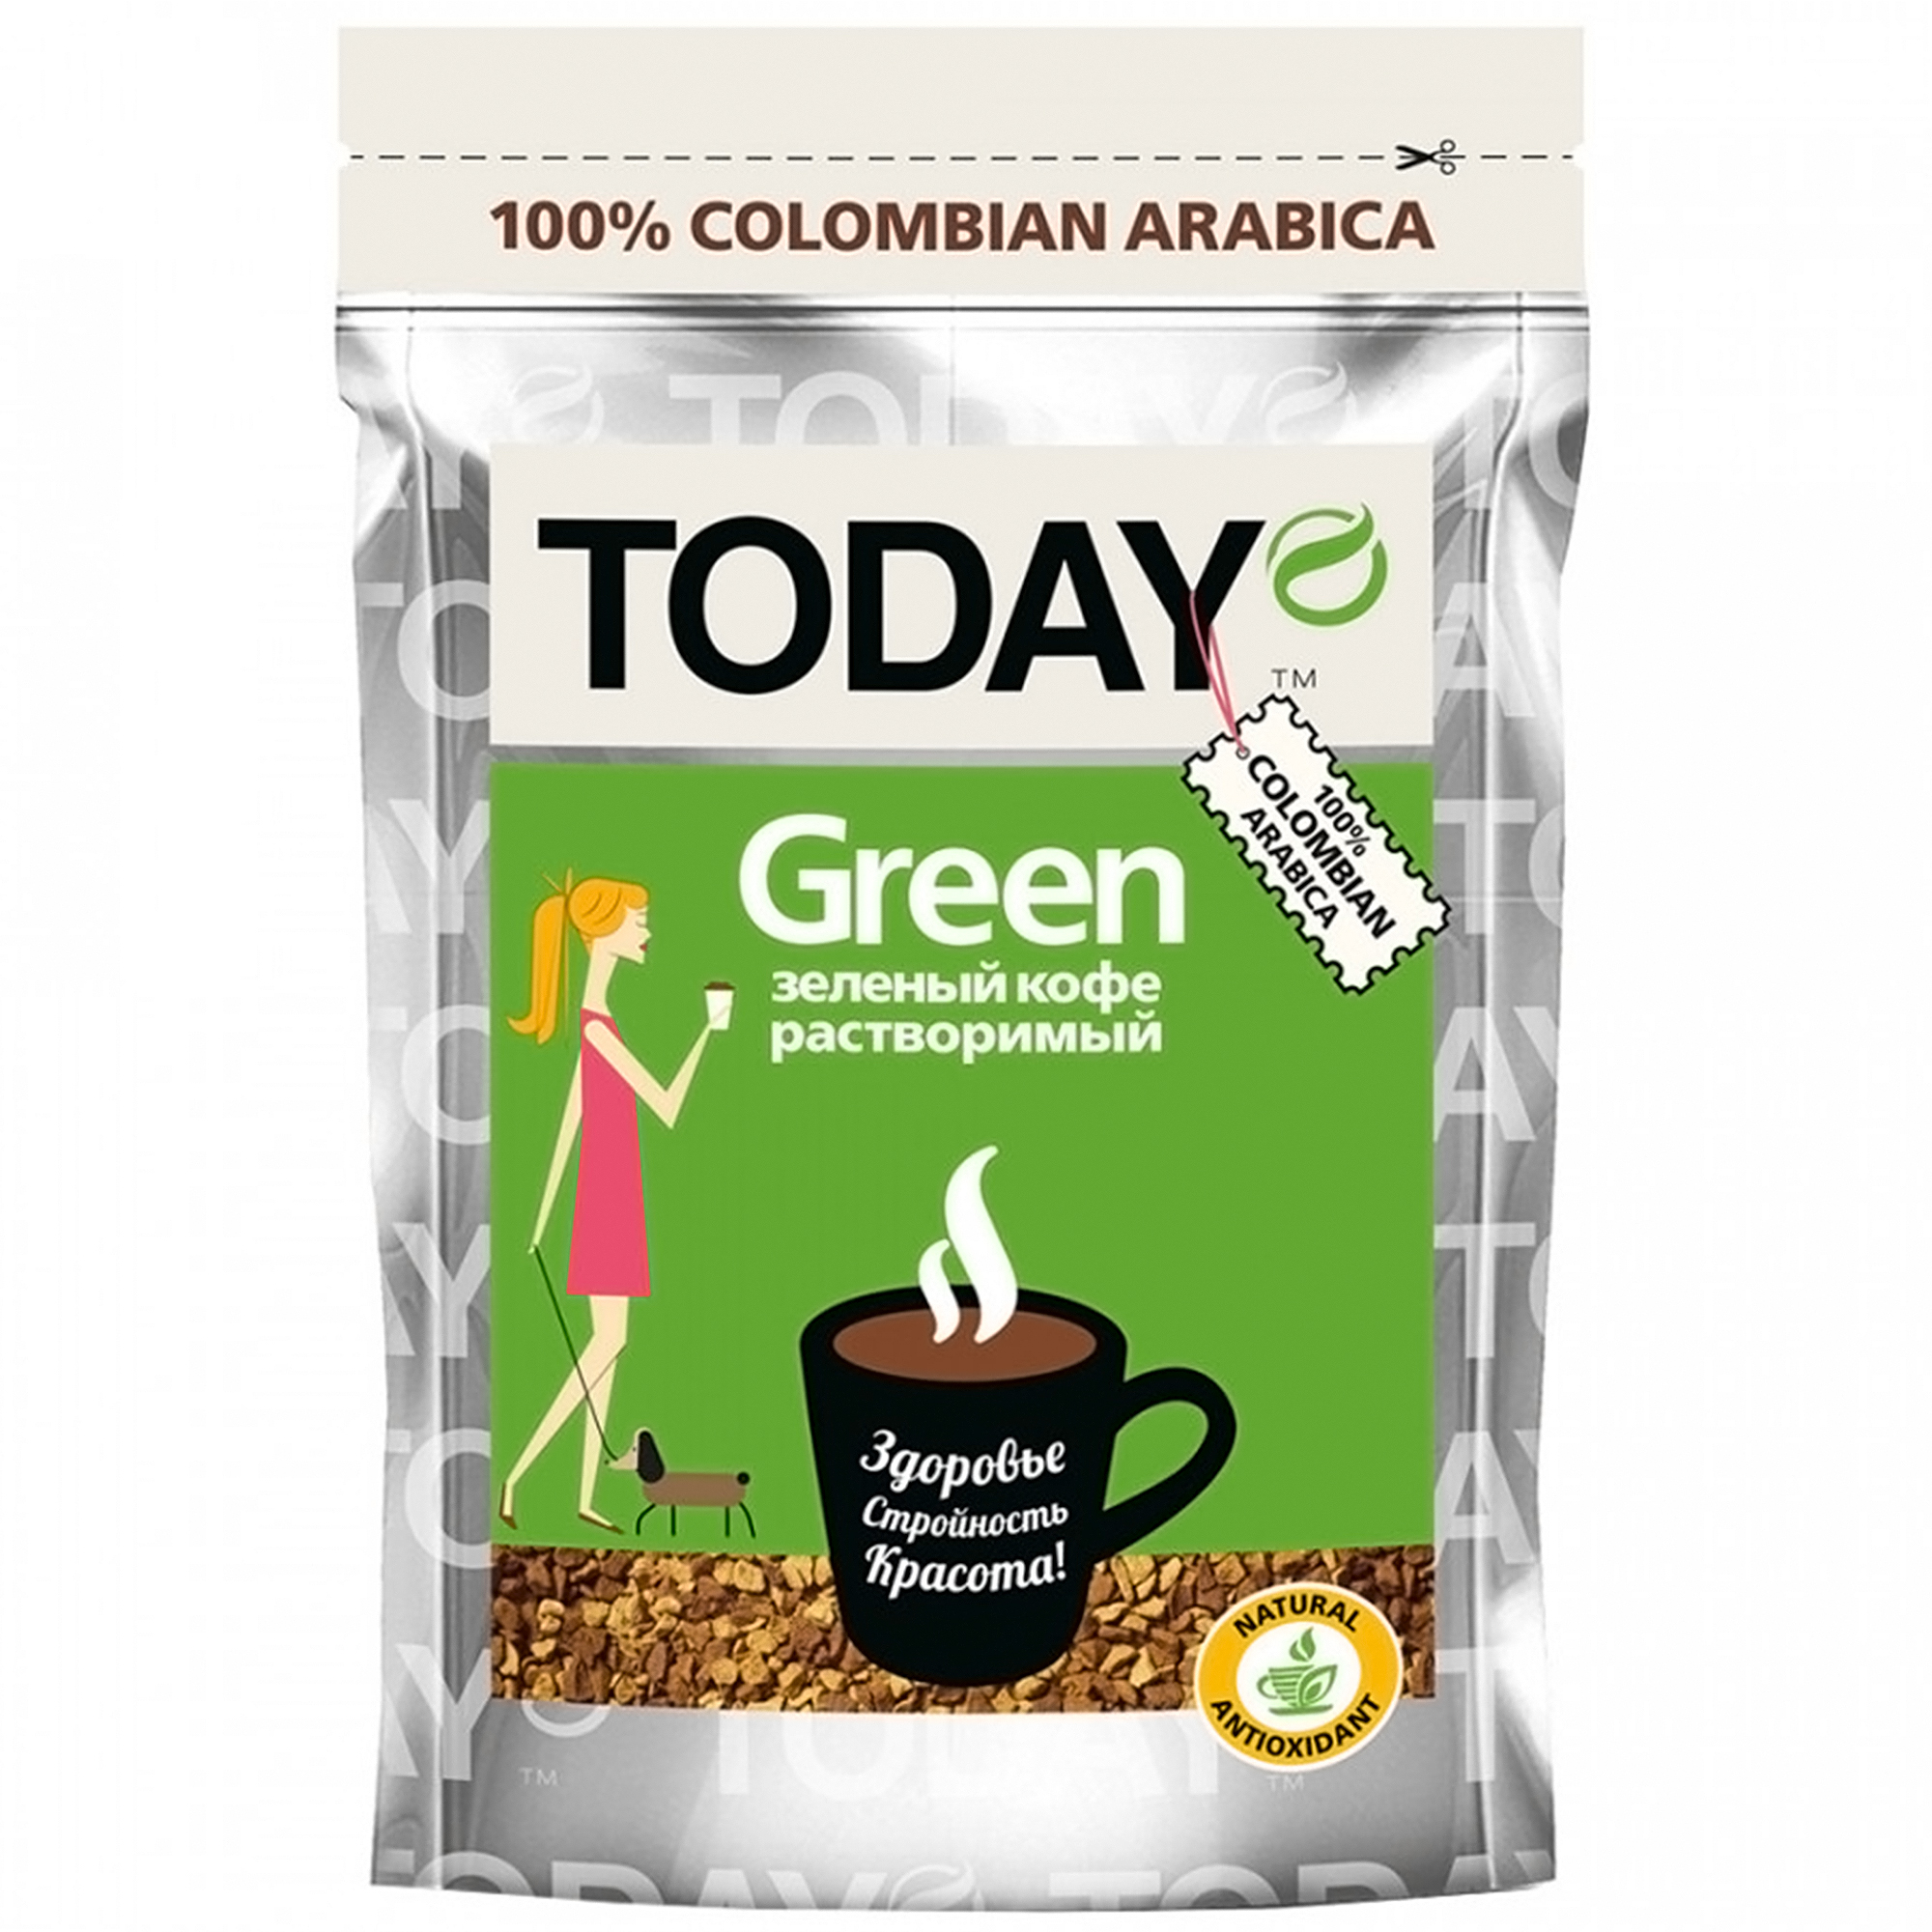 Кофе Today Green растворимый сублимированный, 75 г кофе porto rosso растворимый сублимированный platino 90 г стеклянная банка